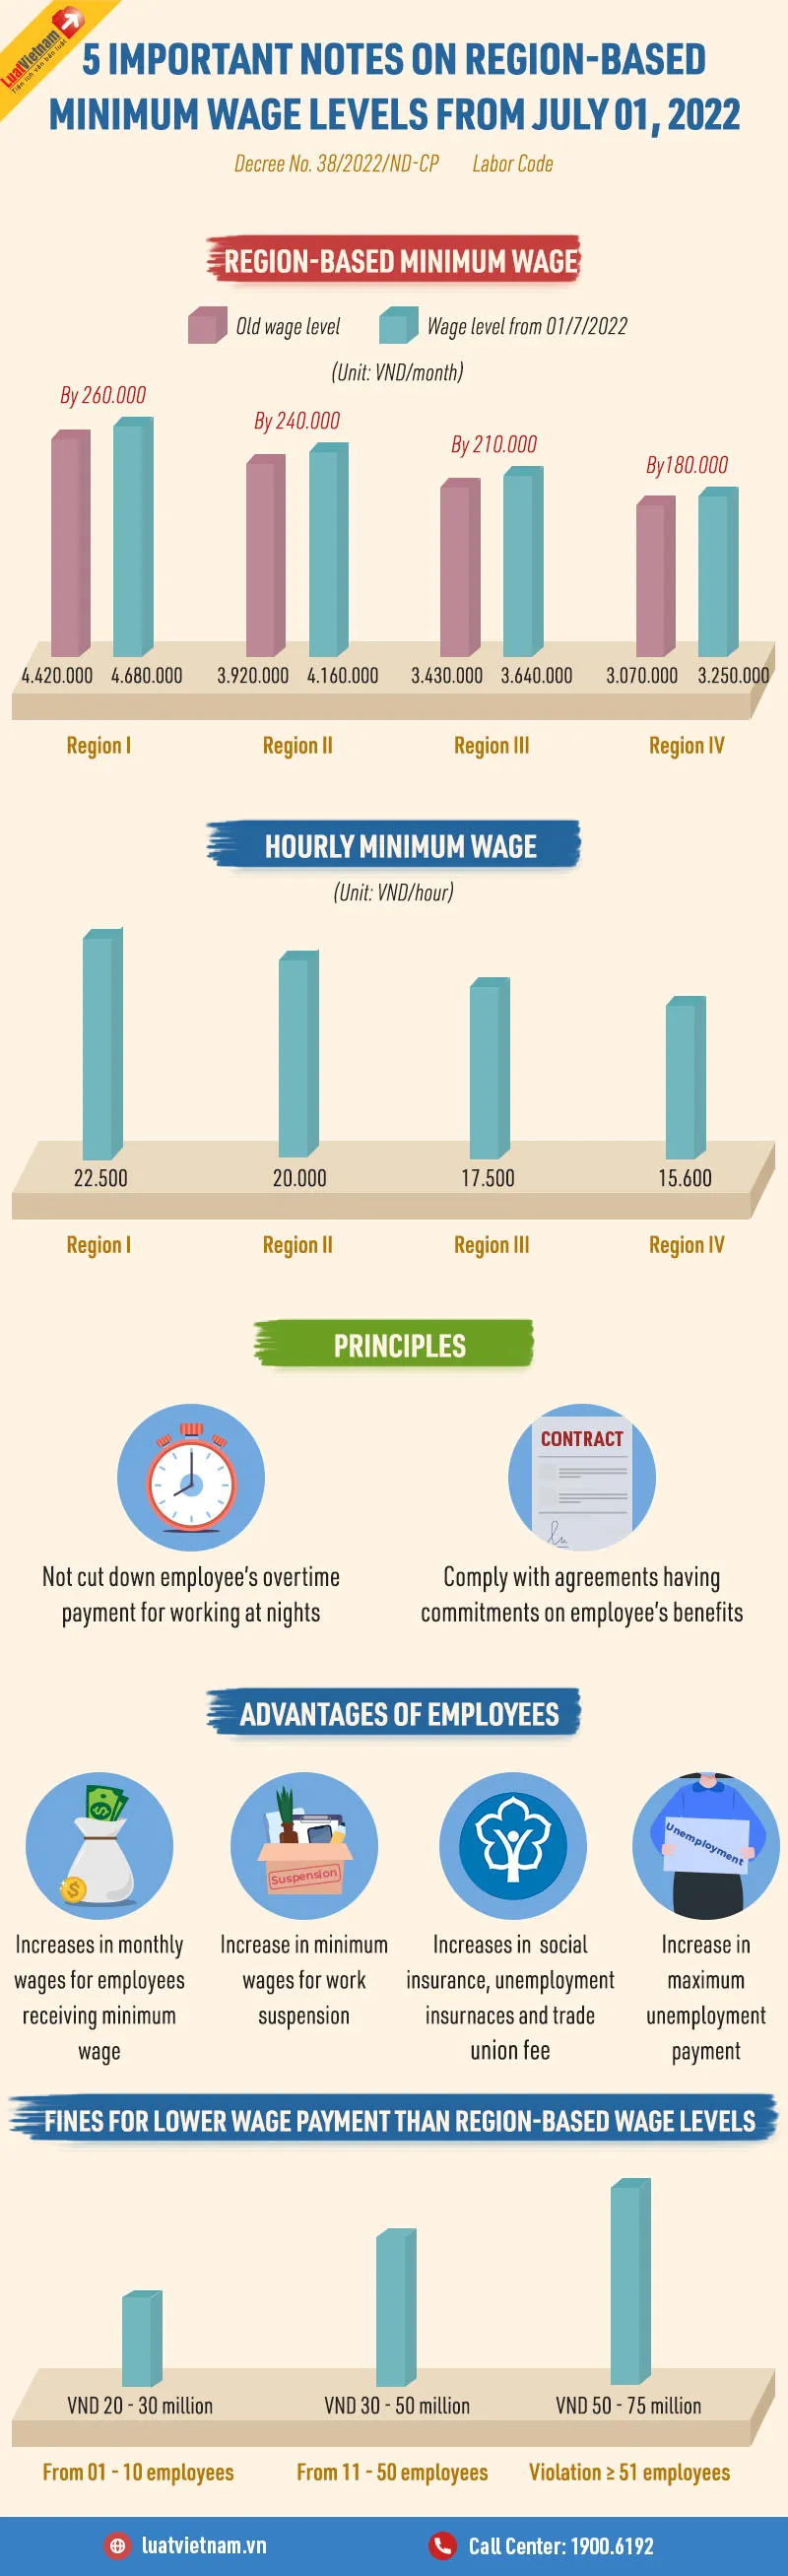 05 important notes on region-based minimum wage levels